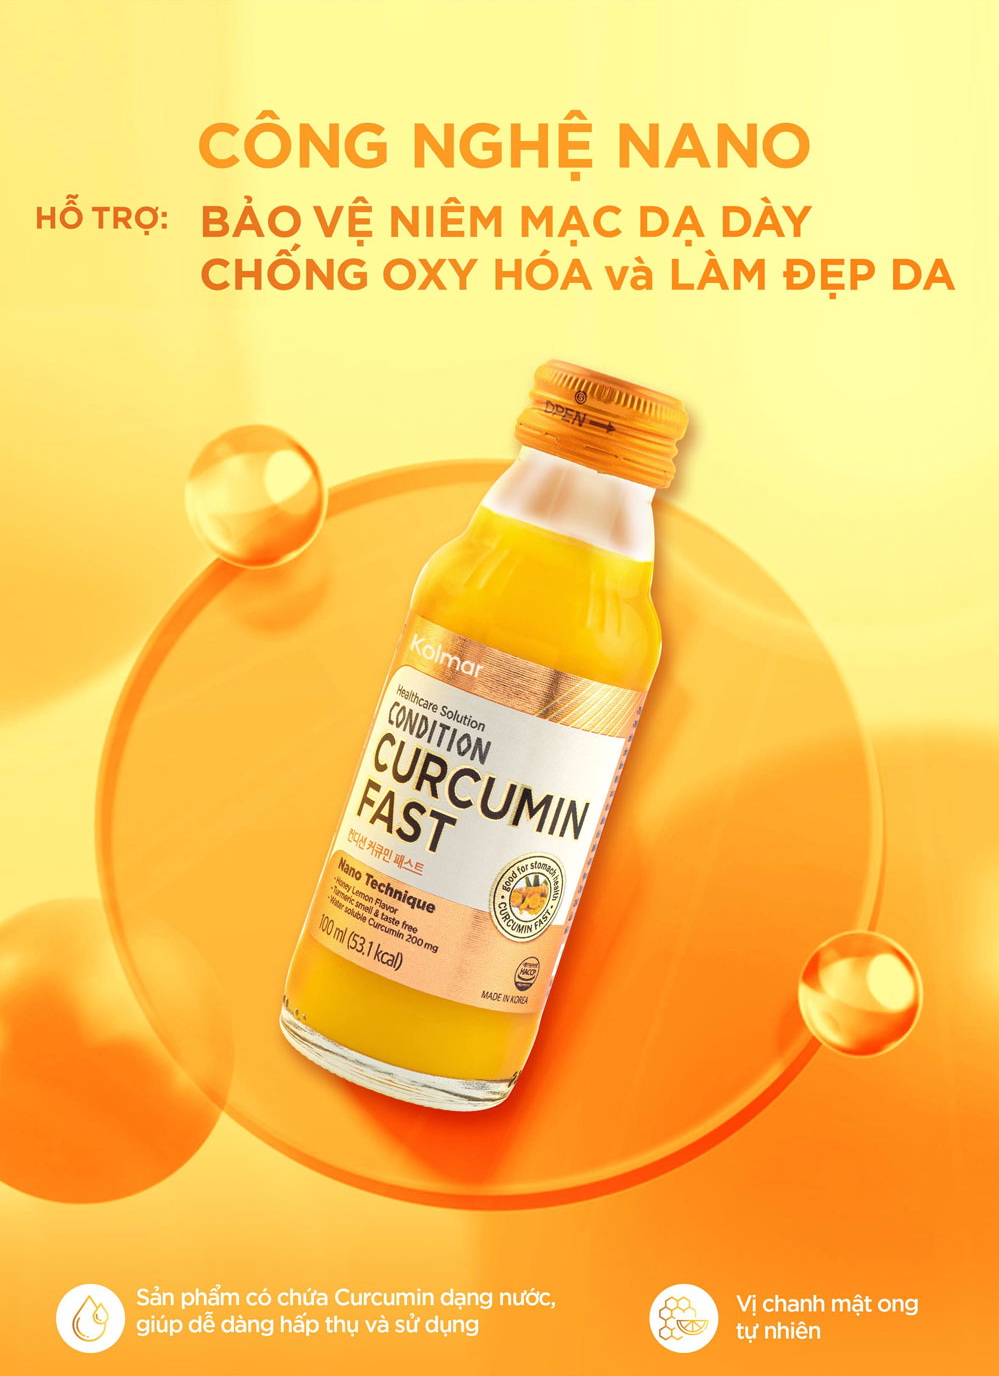 [Kolmar]Thực phẩm bảo vệ sức khỏe hộp 10 chai nước tinh nghệ Nano Condition Curcumin Fast bảo vệ và tăng cường chức năng dạ dày